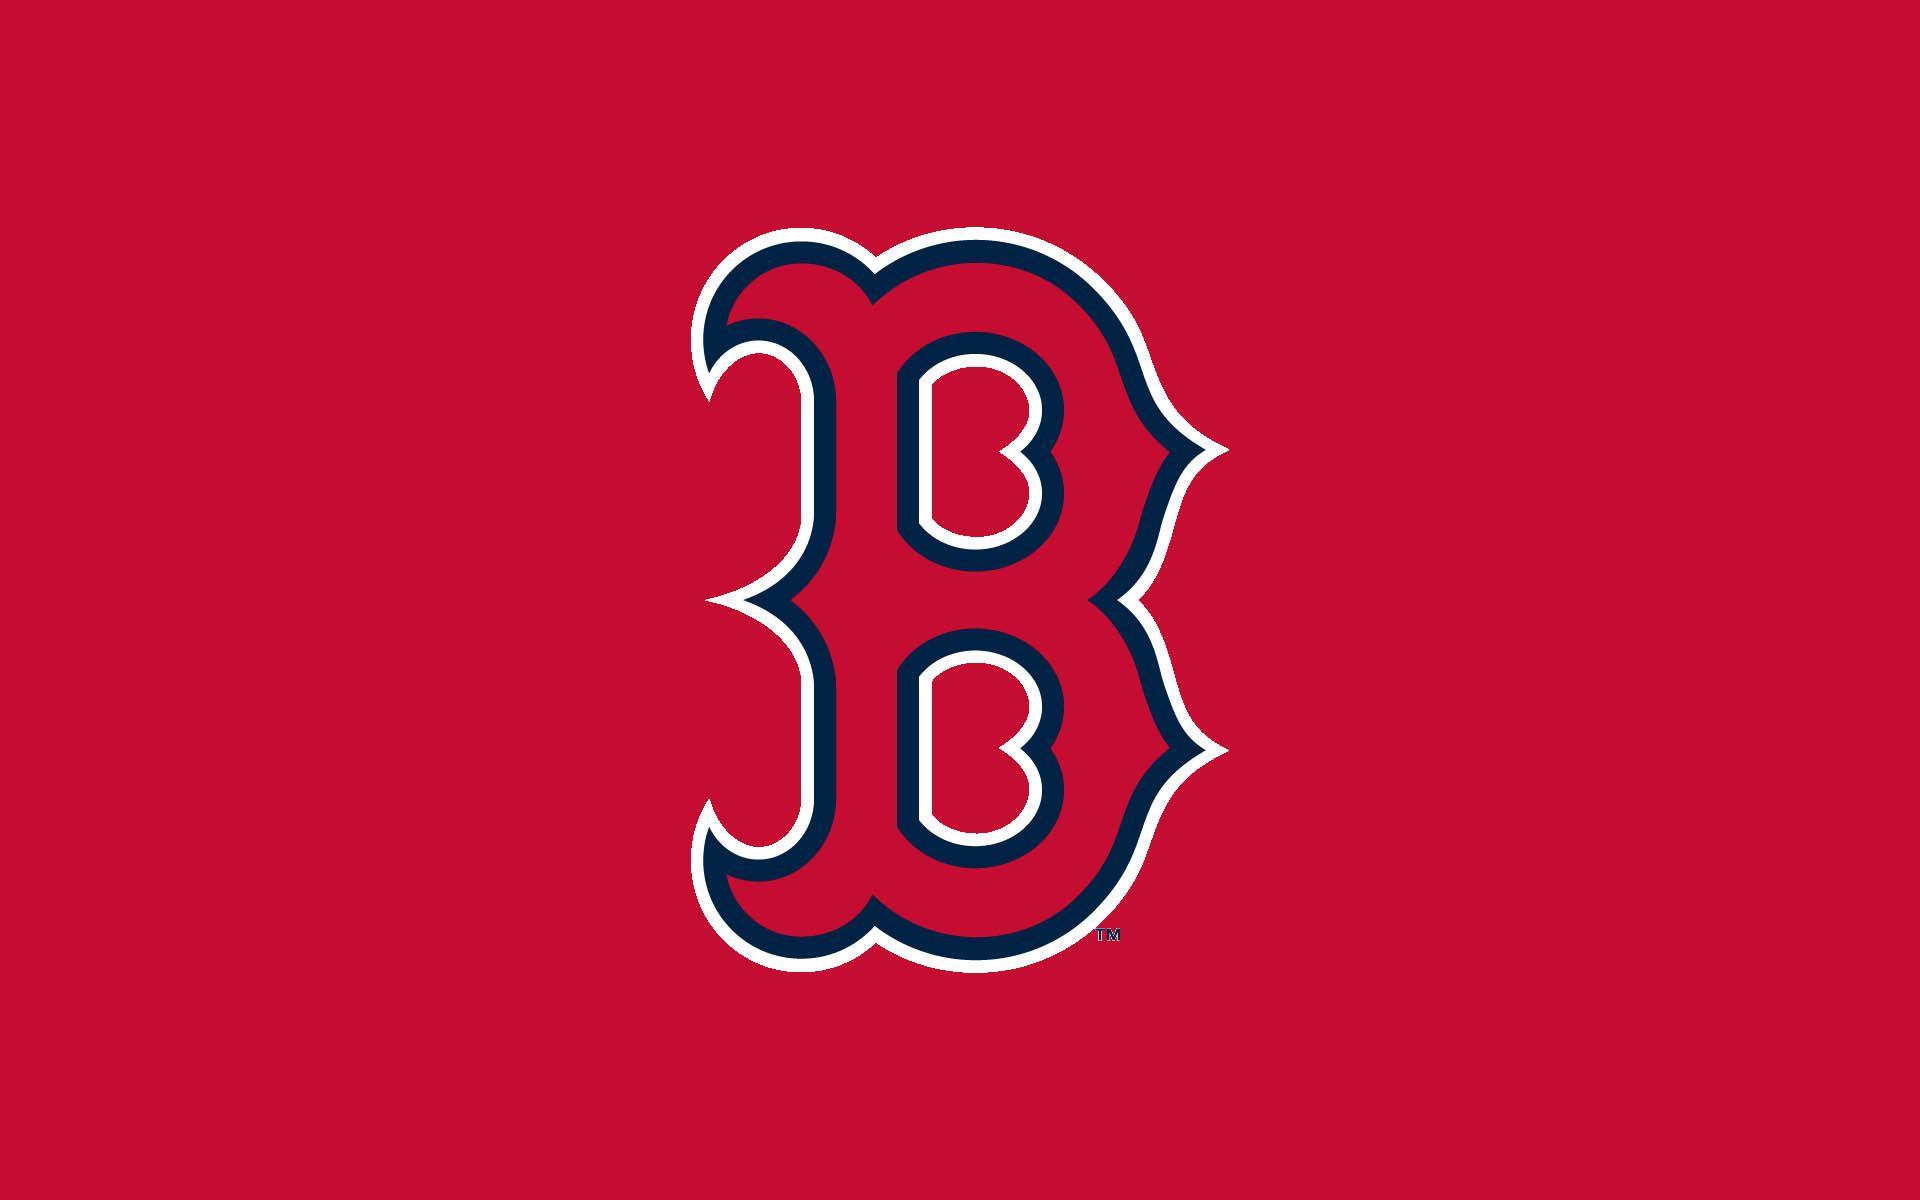 Red Sox Wallpaper